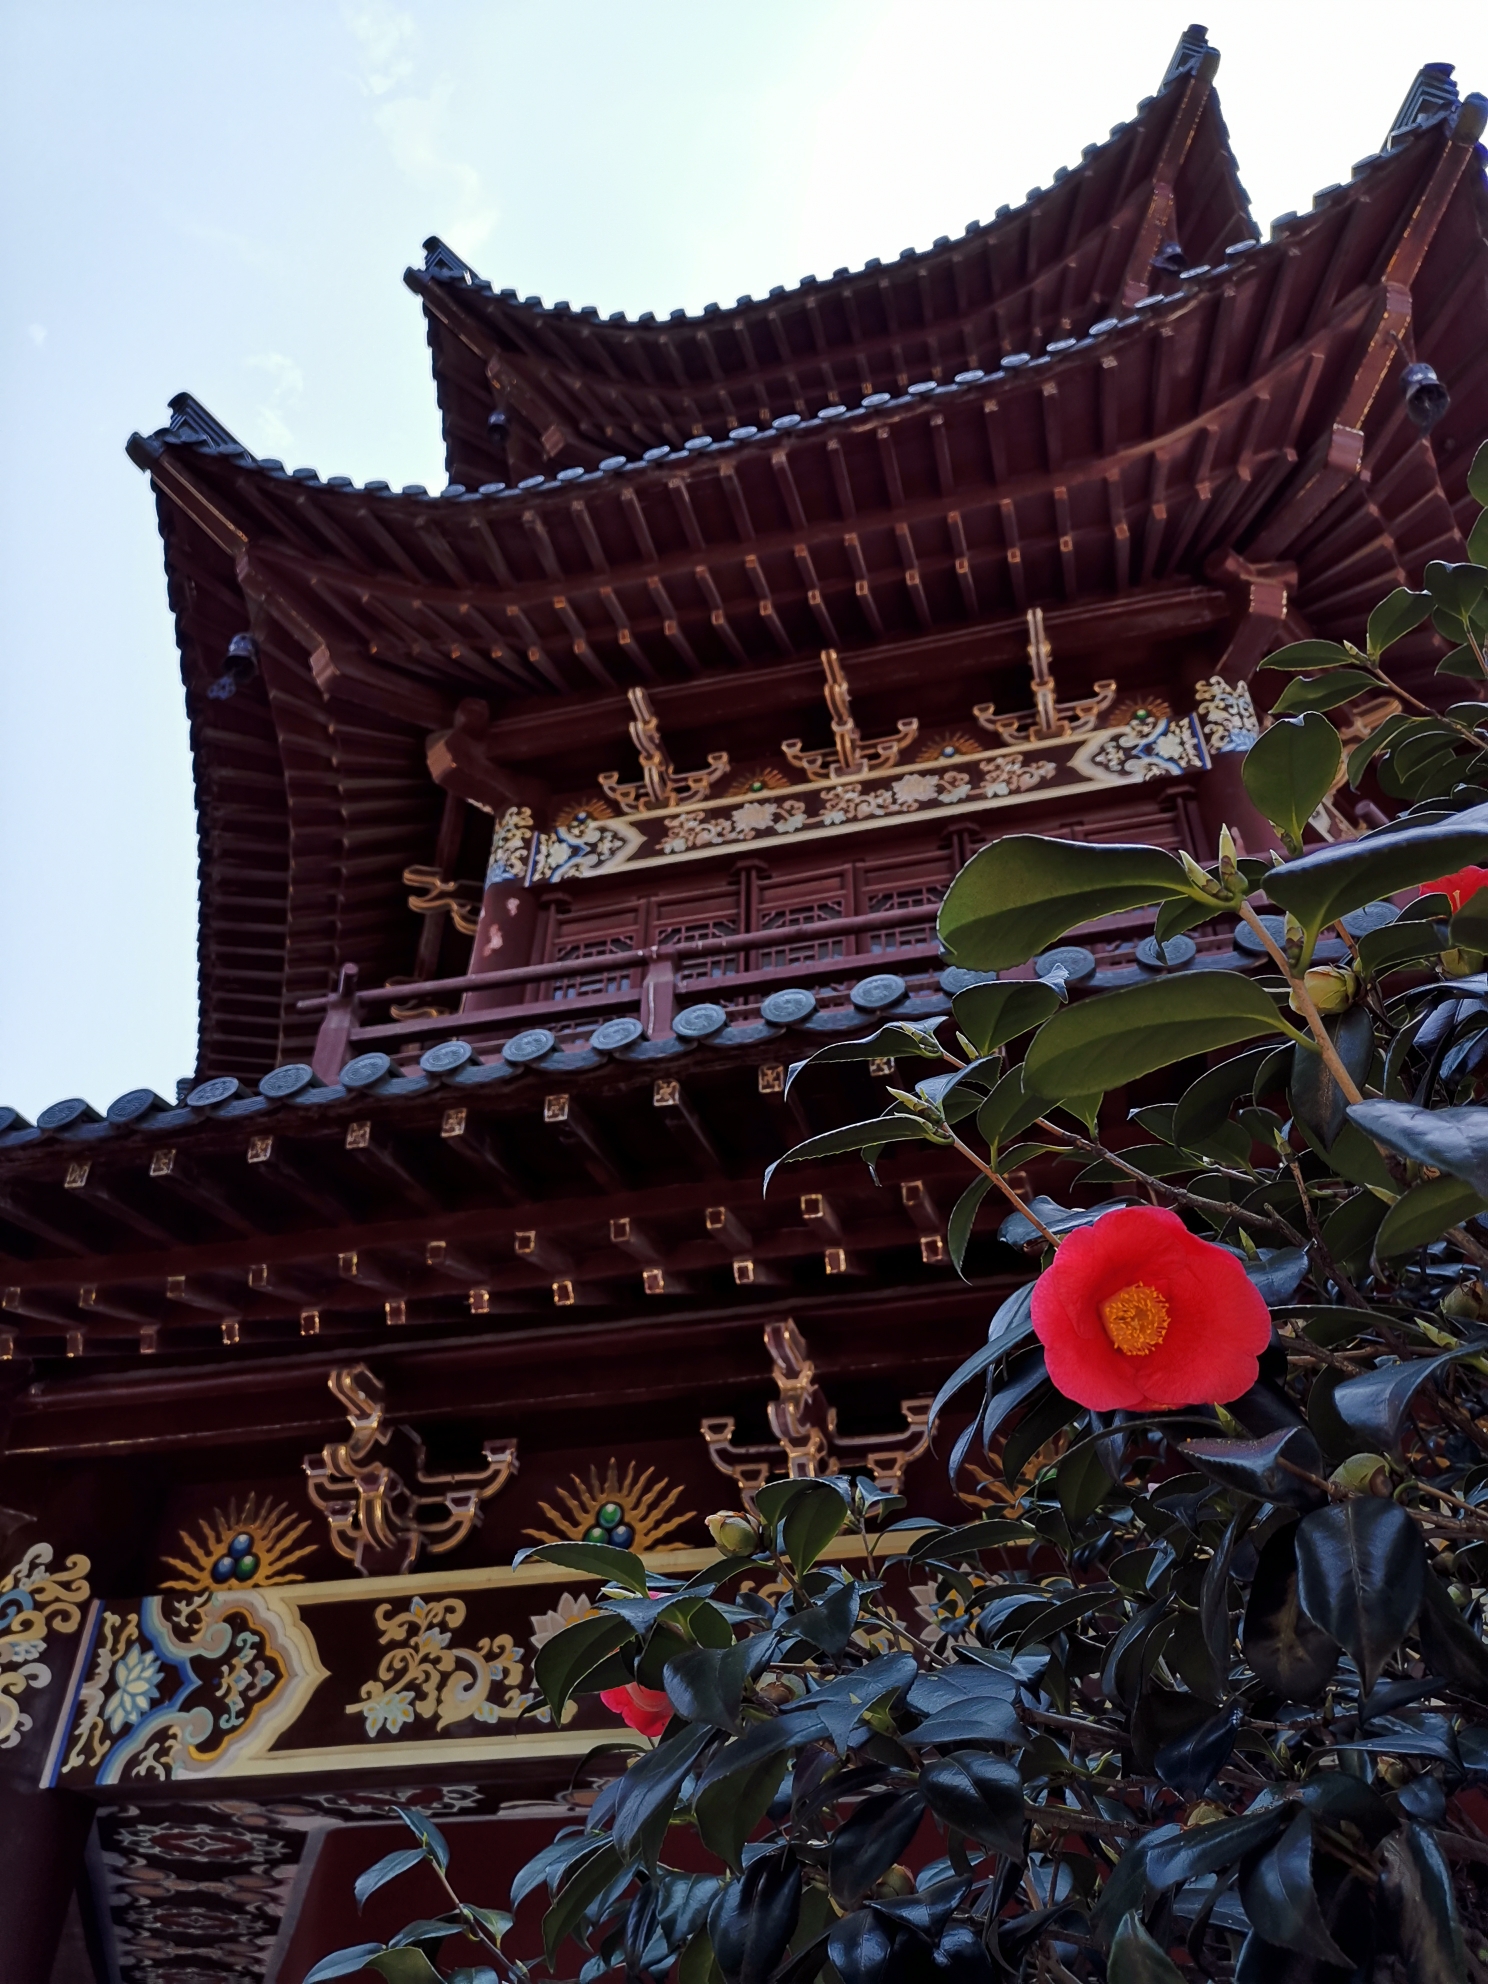 踏寻苏轼的足迹-今天的行程是去东林寺和西琳寺寻访苏轼当年的足迹